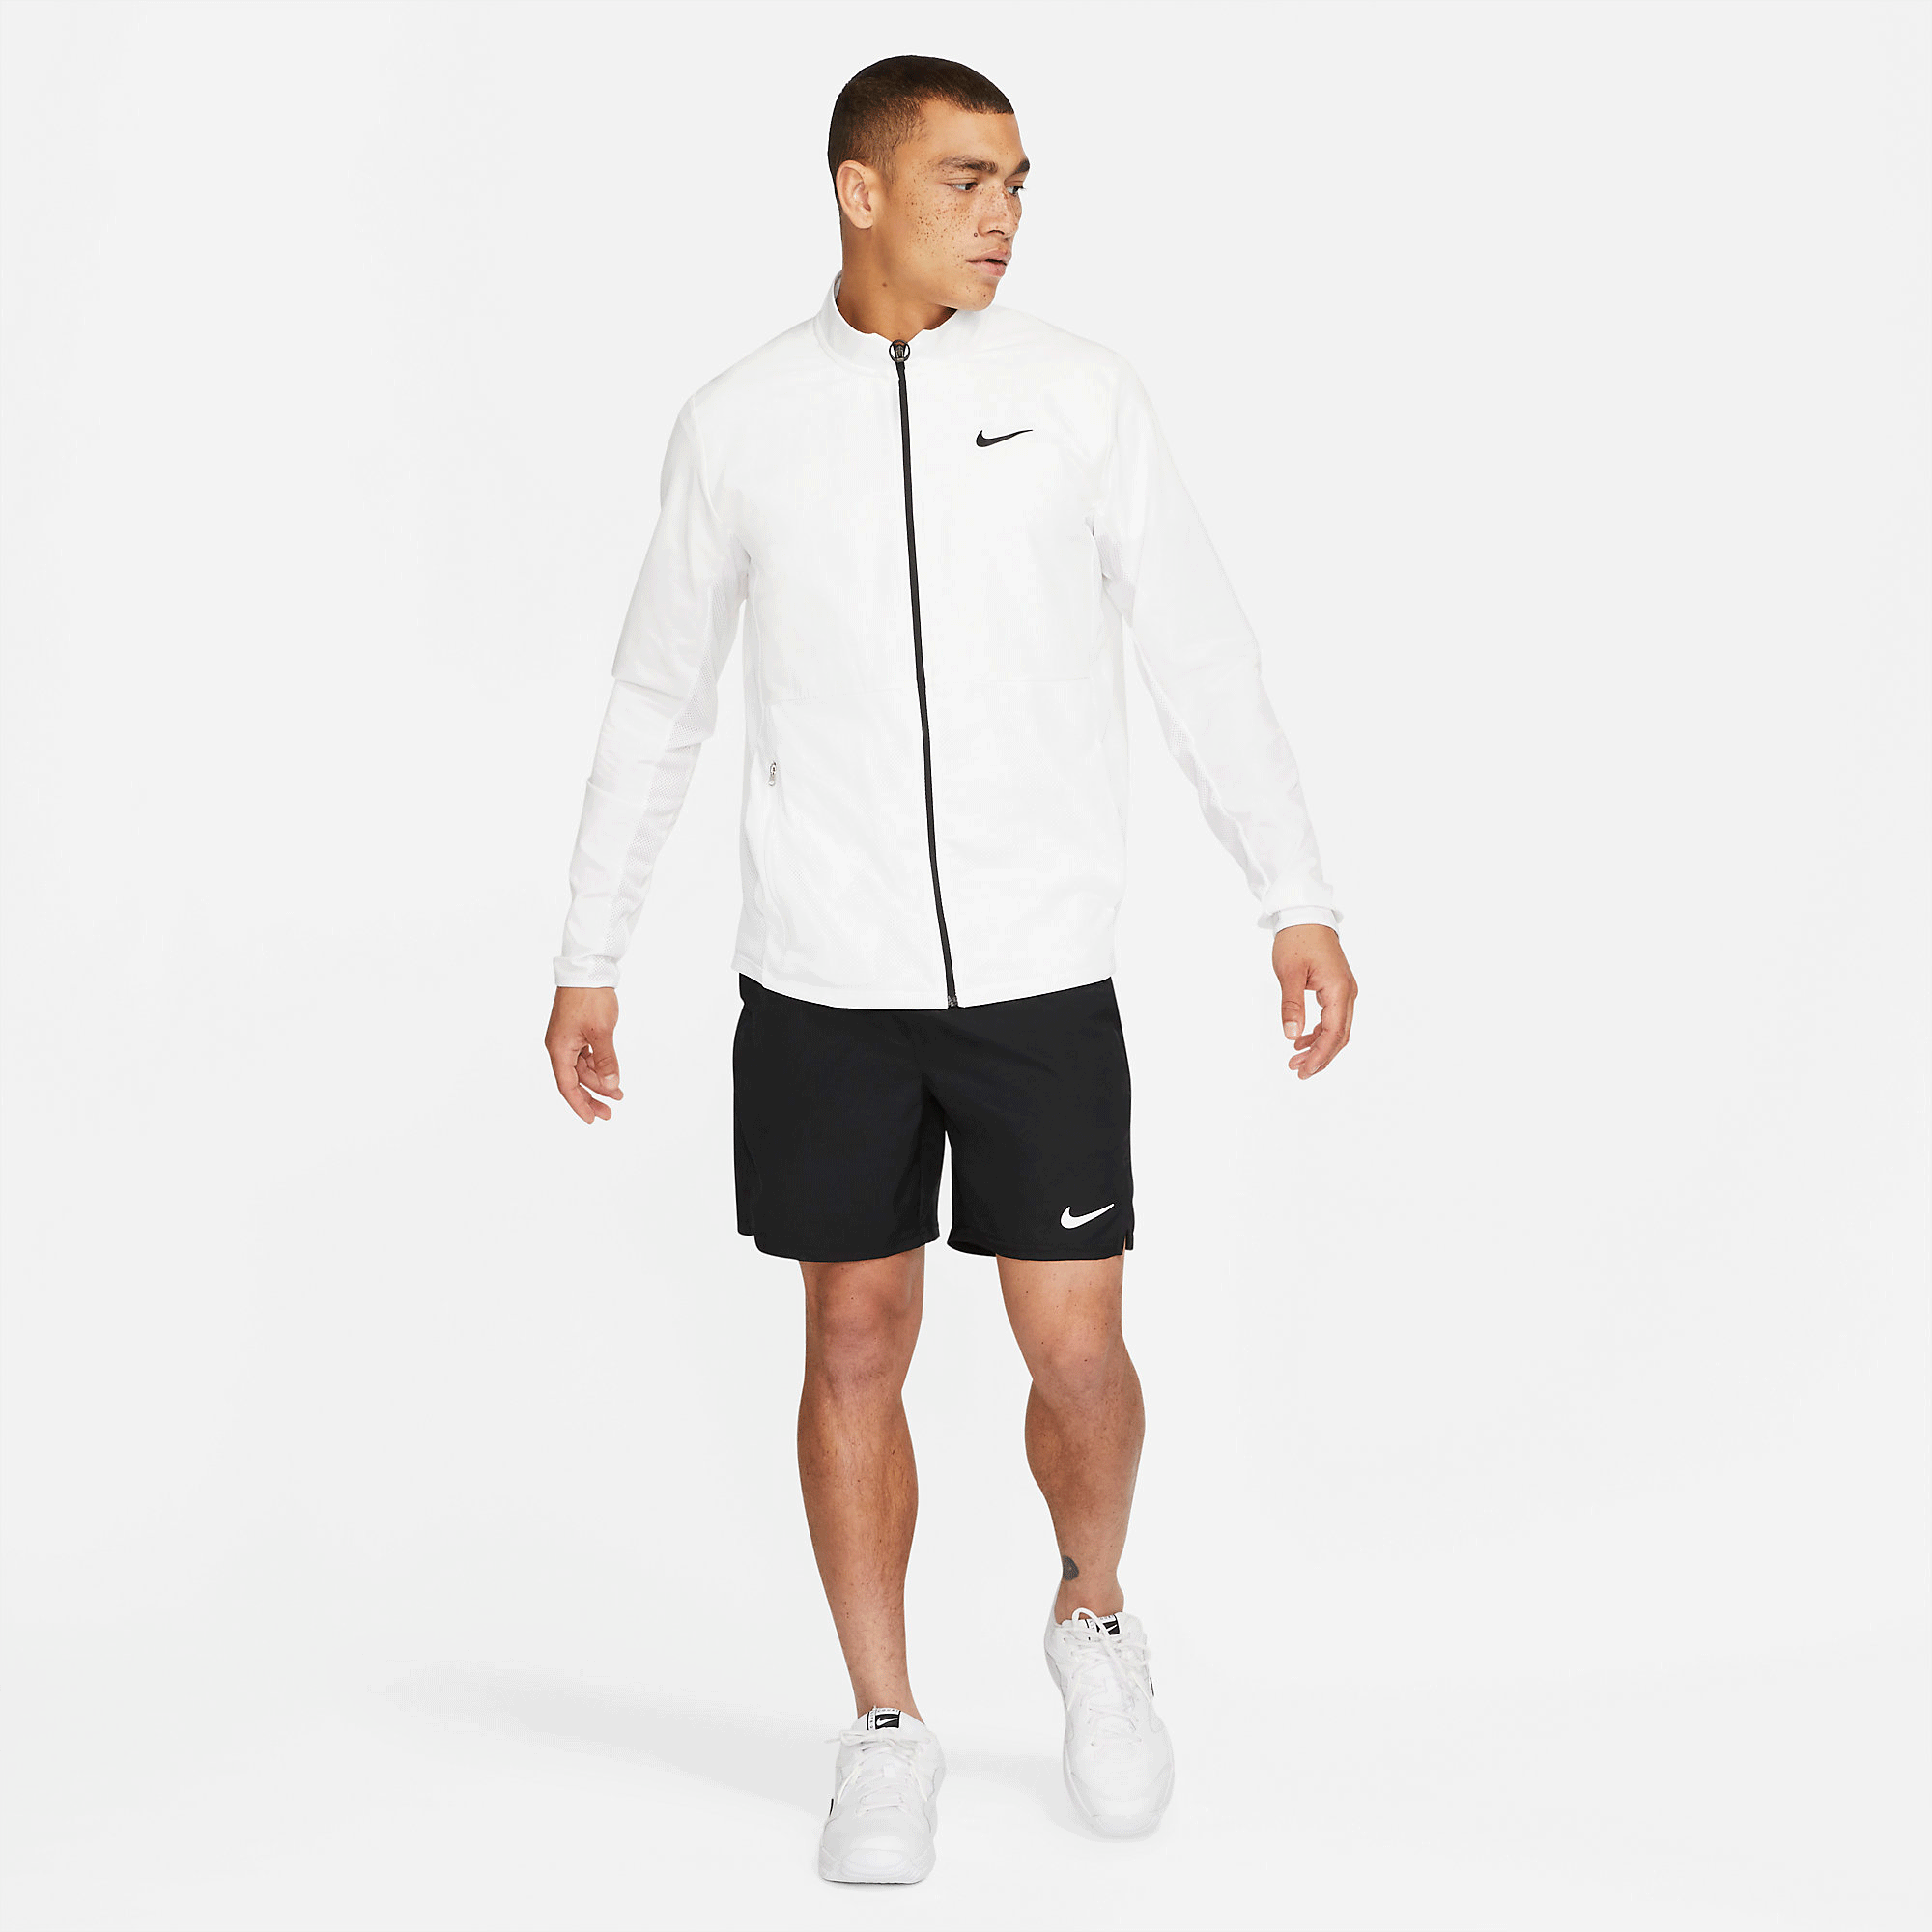 Nike Mens Advantage Tennis Jacket - White - Tennisnuts.com